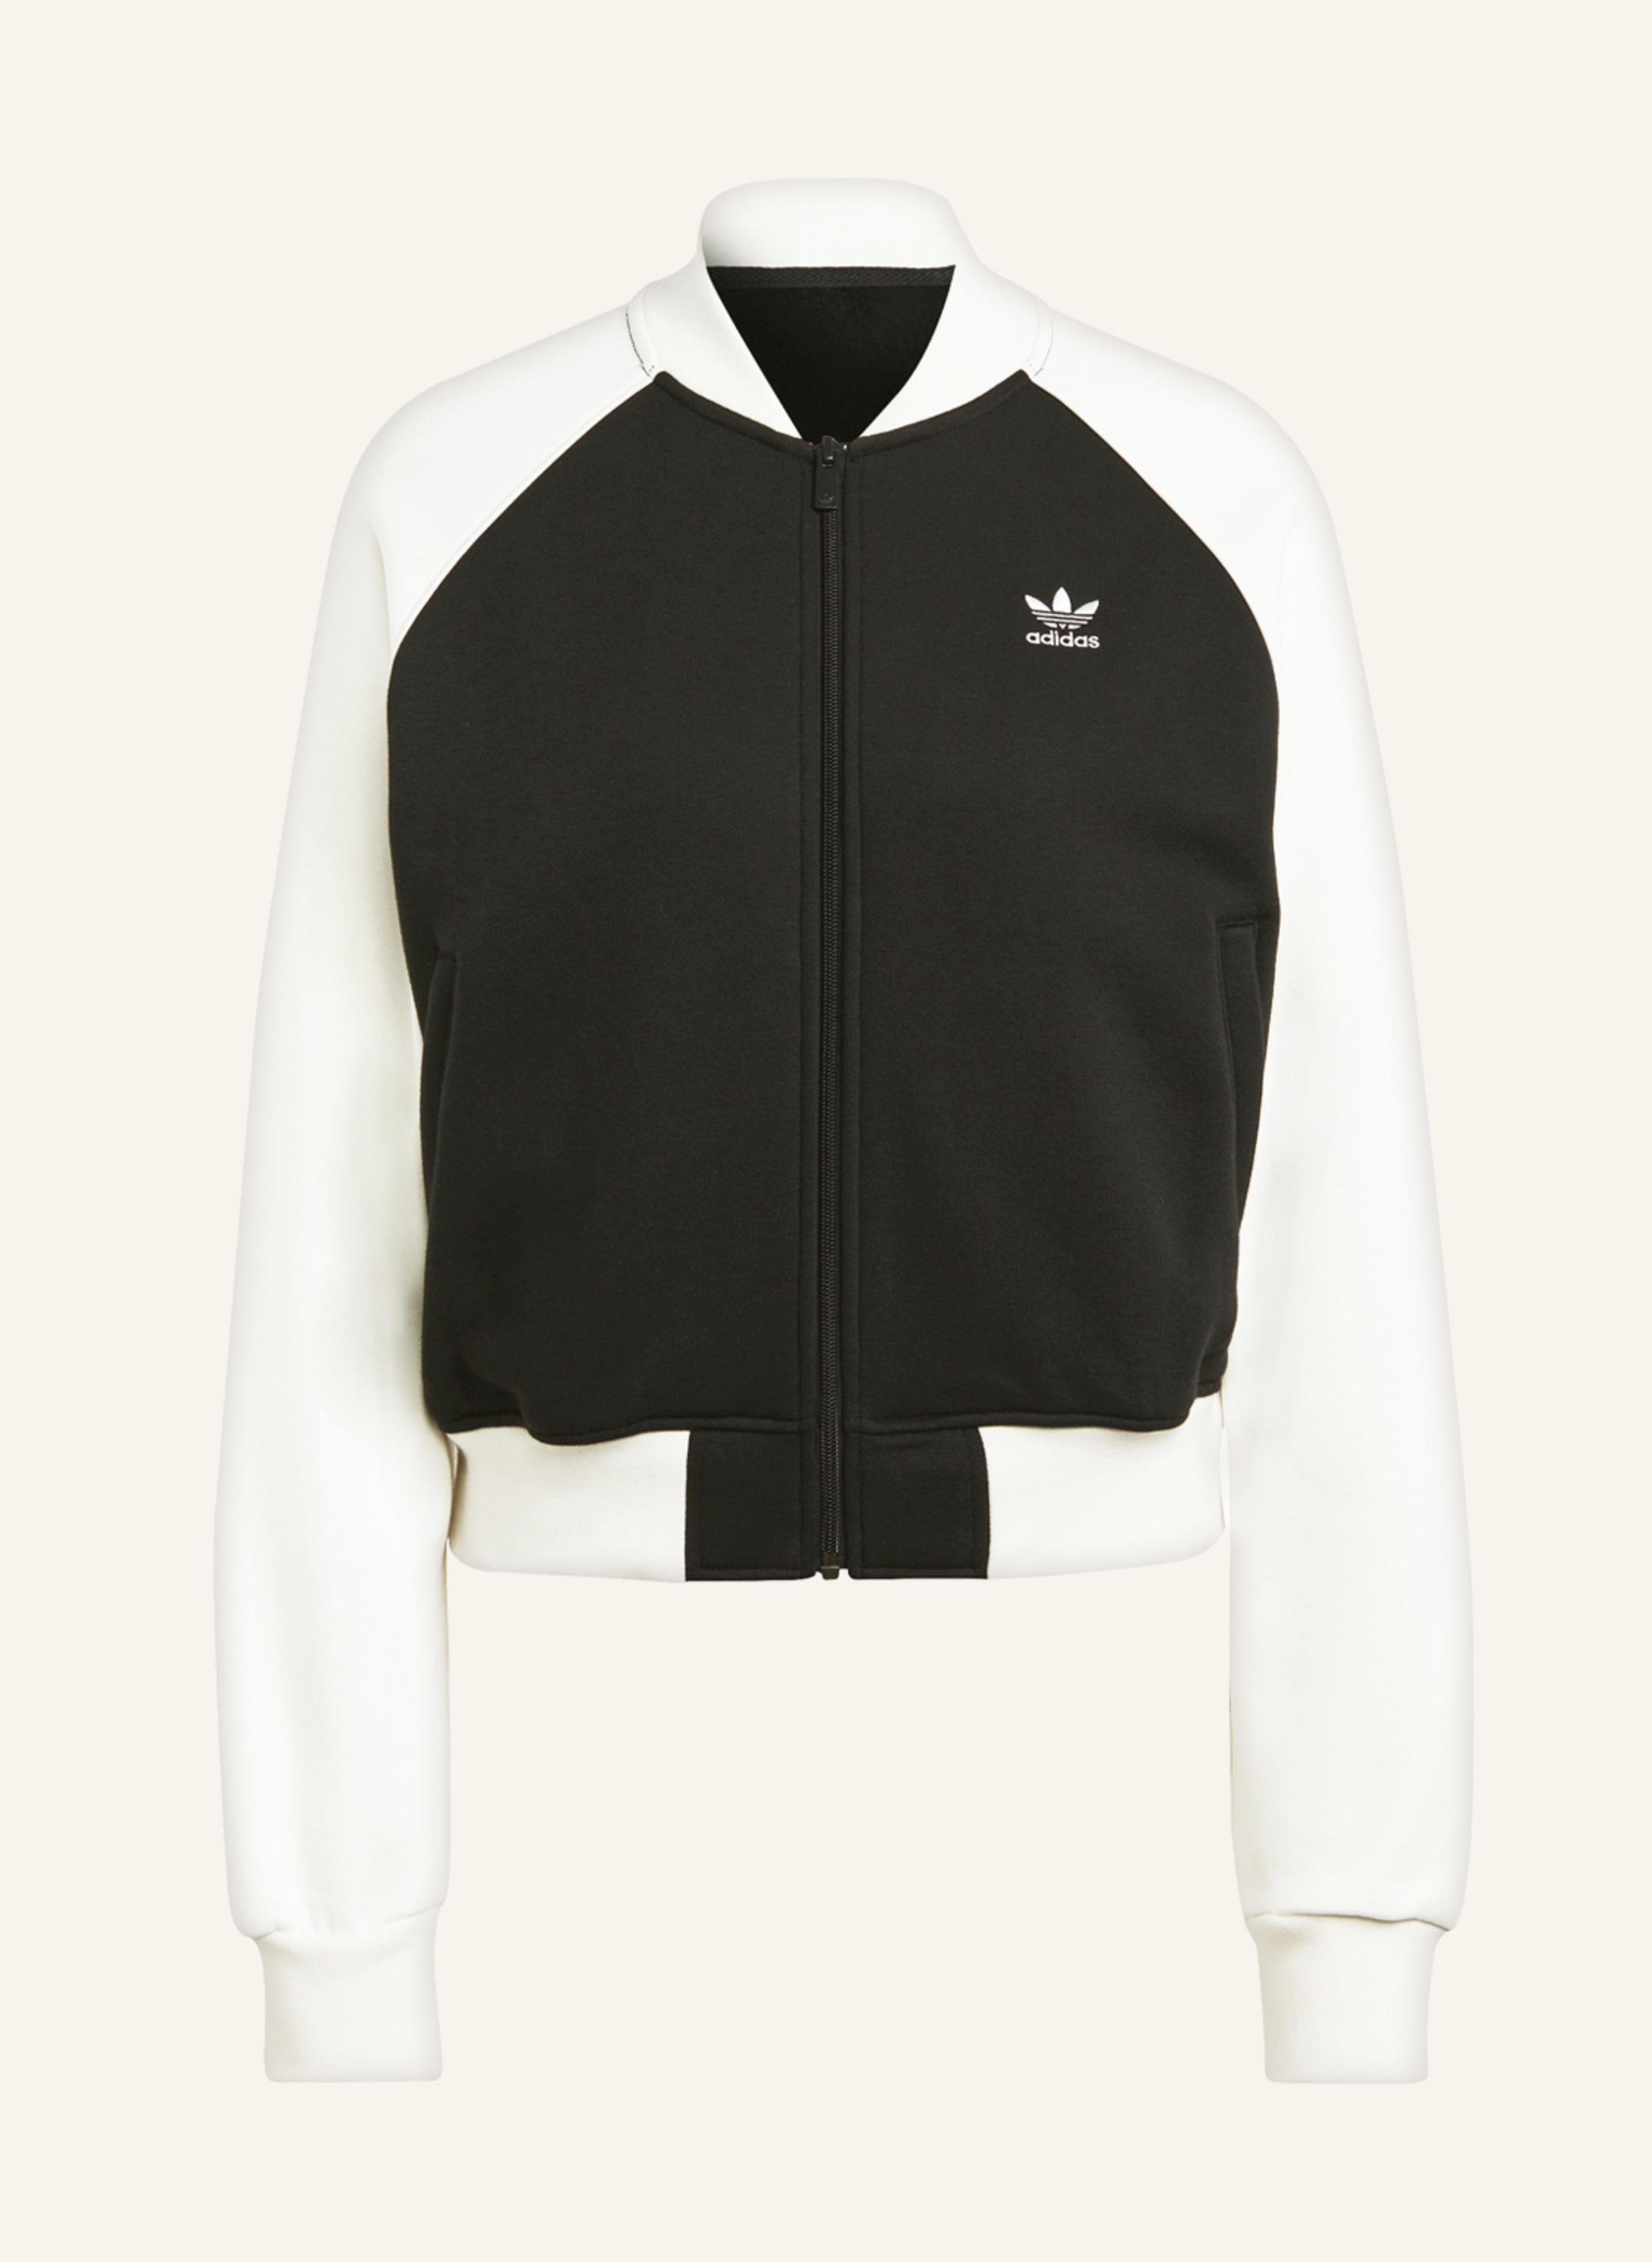 adidas Originals Sweat jacket ADICOLOR CLASSICS in TREFOIL ecru black